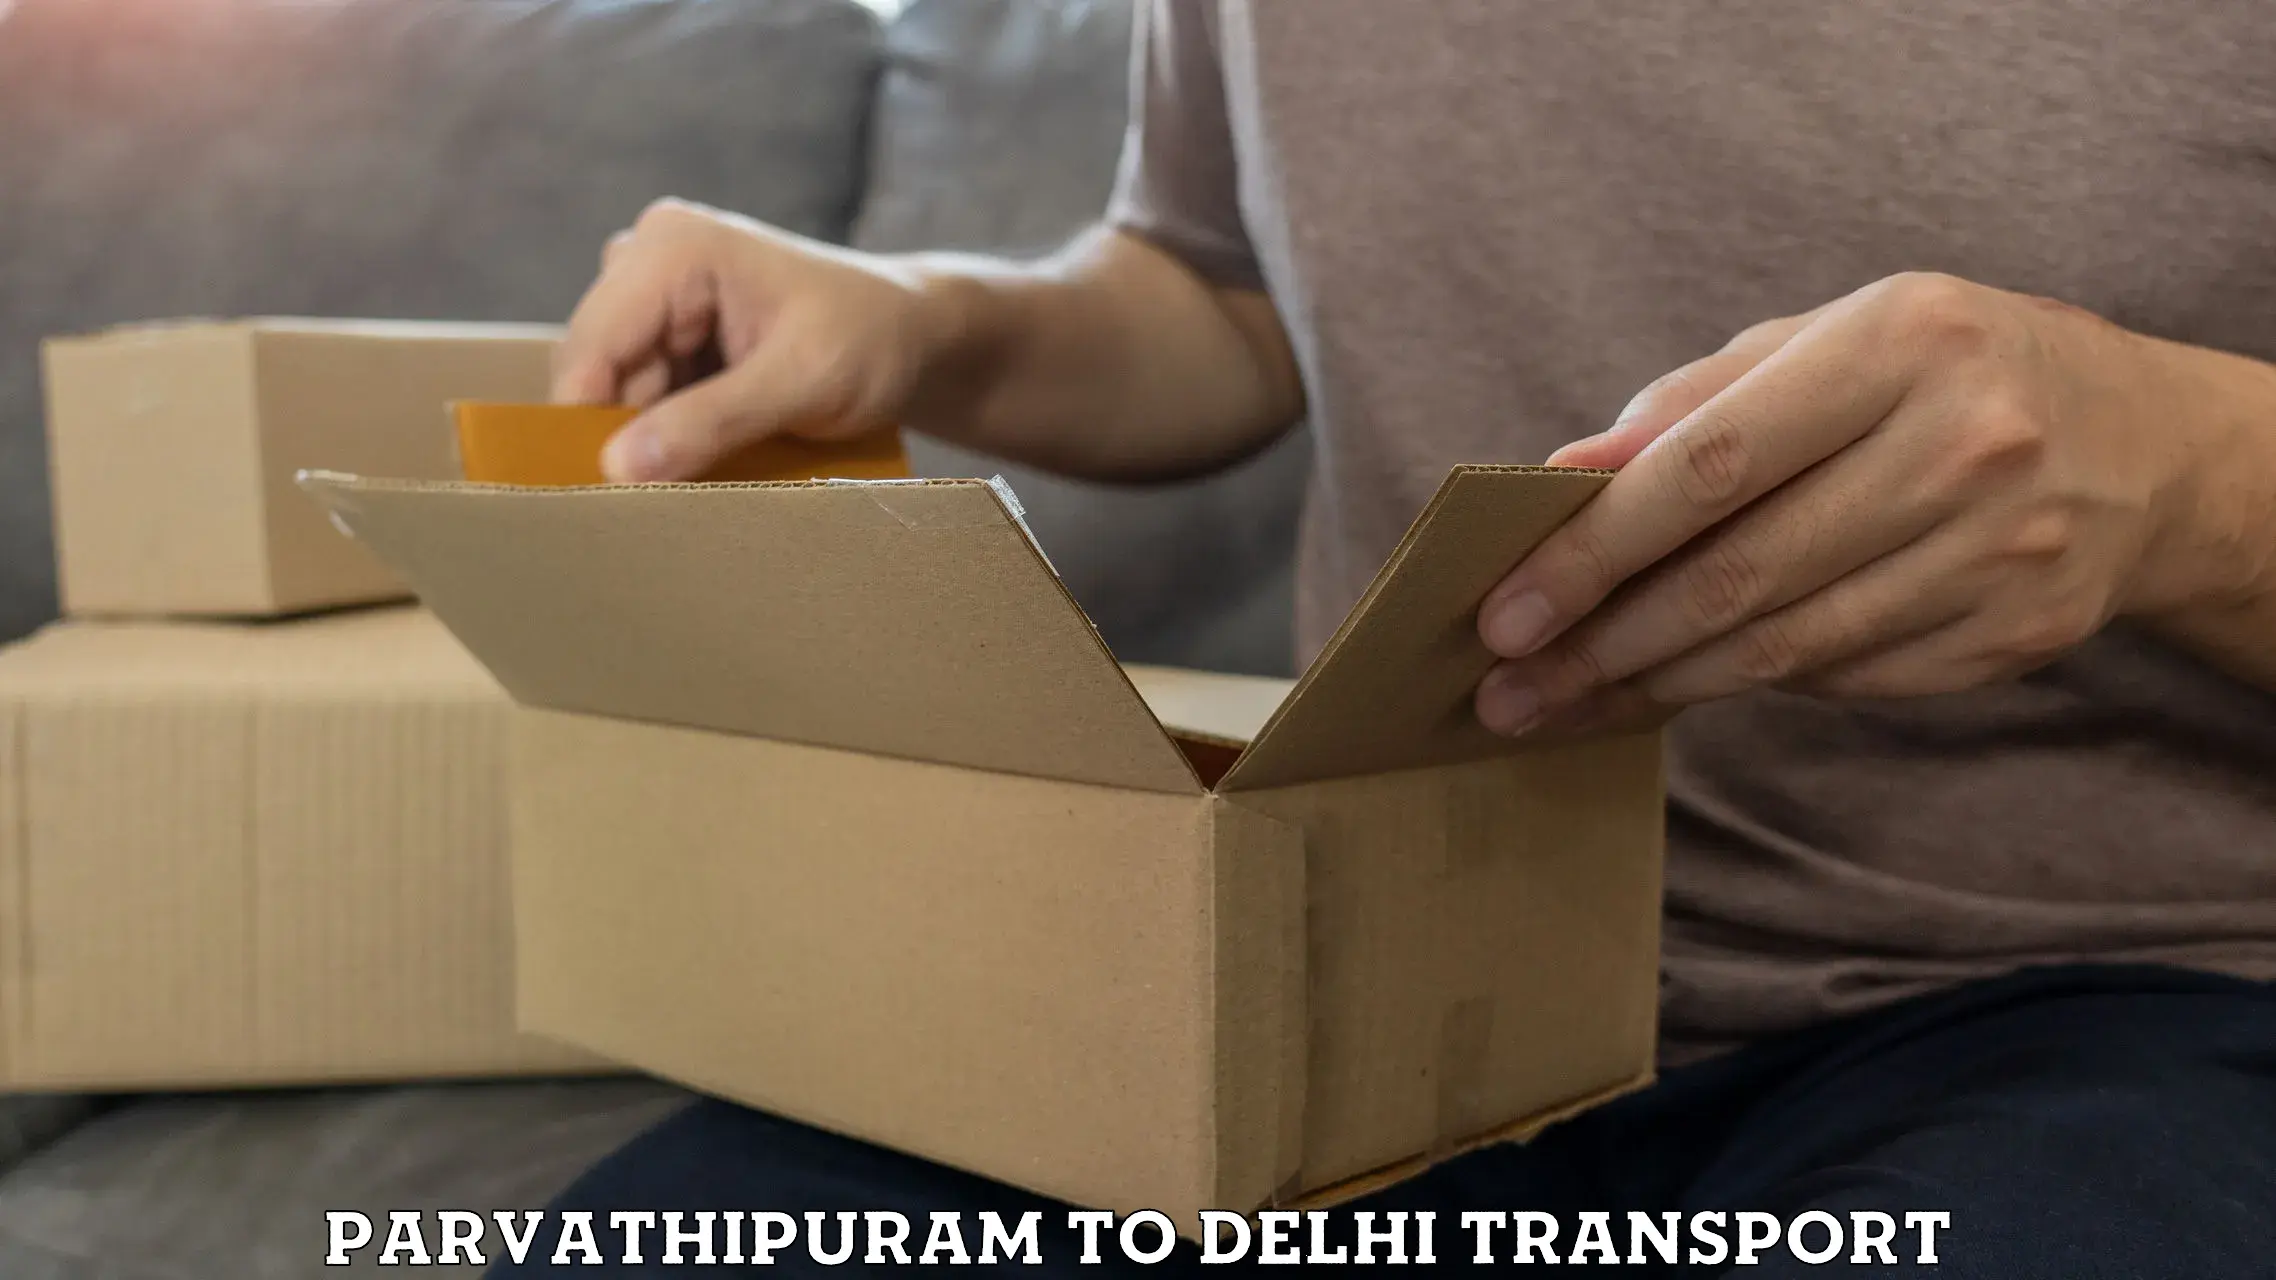 Transport shared services Parvathipuram to University of Delhi